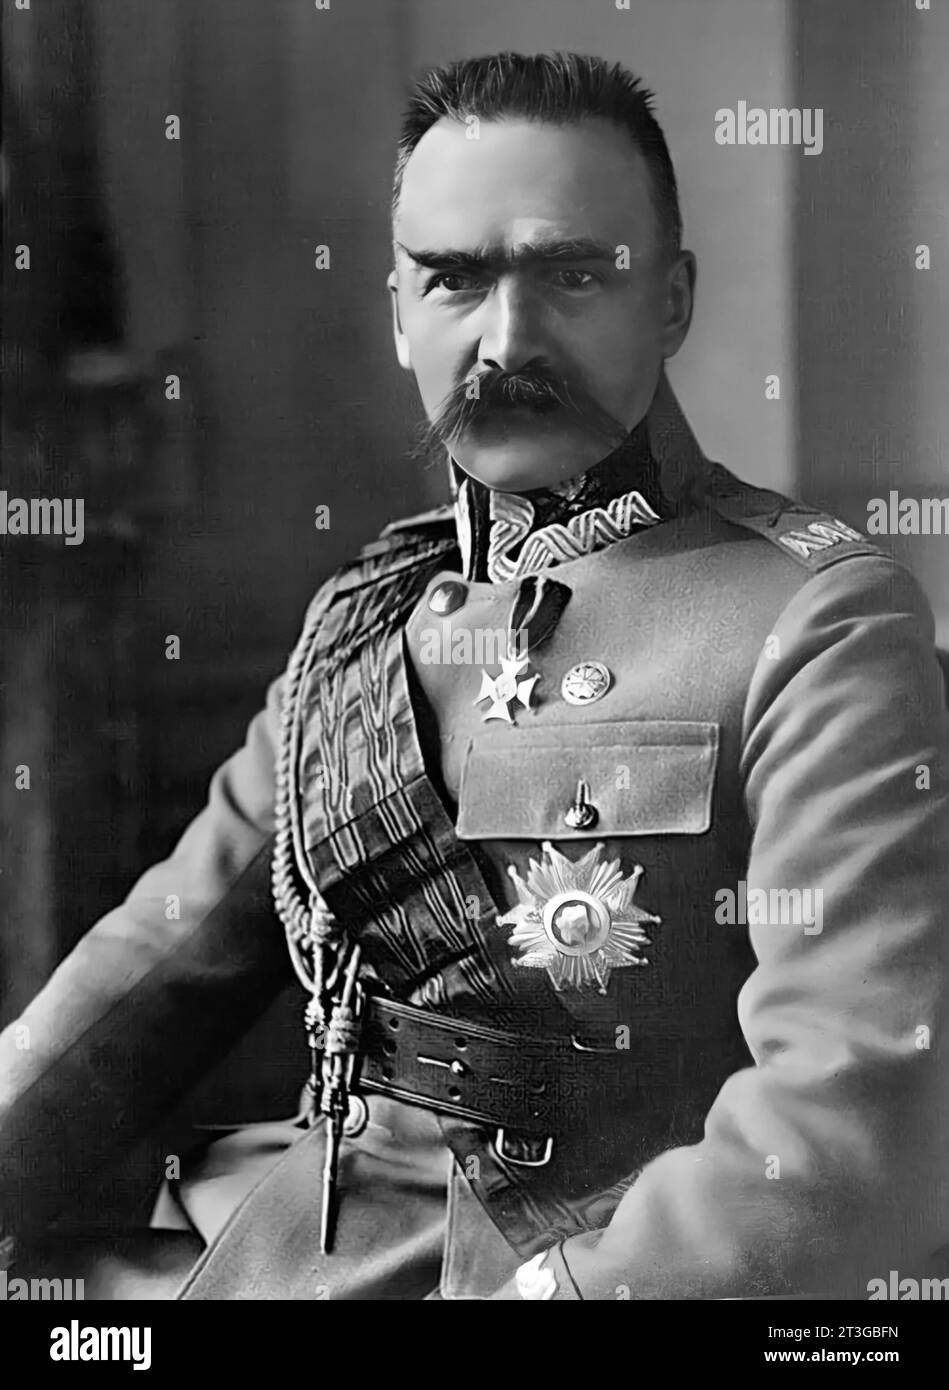 Józef Piłsudski. Portrait de l'homme d'État polonais Józef Klemens Piłsudski (1867-1935) dans les années 1920 Banque D'Images